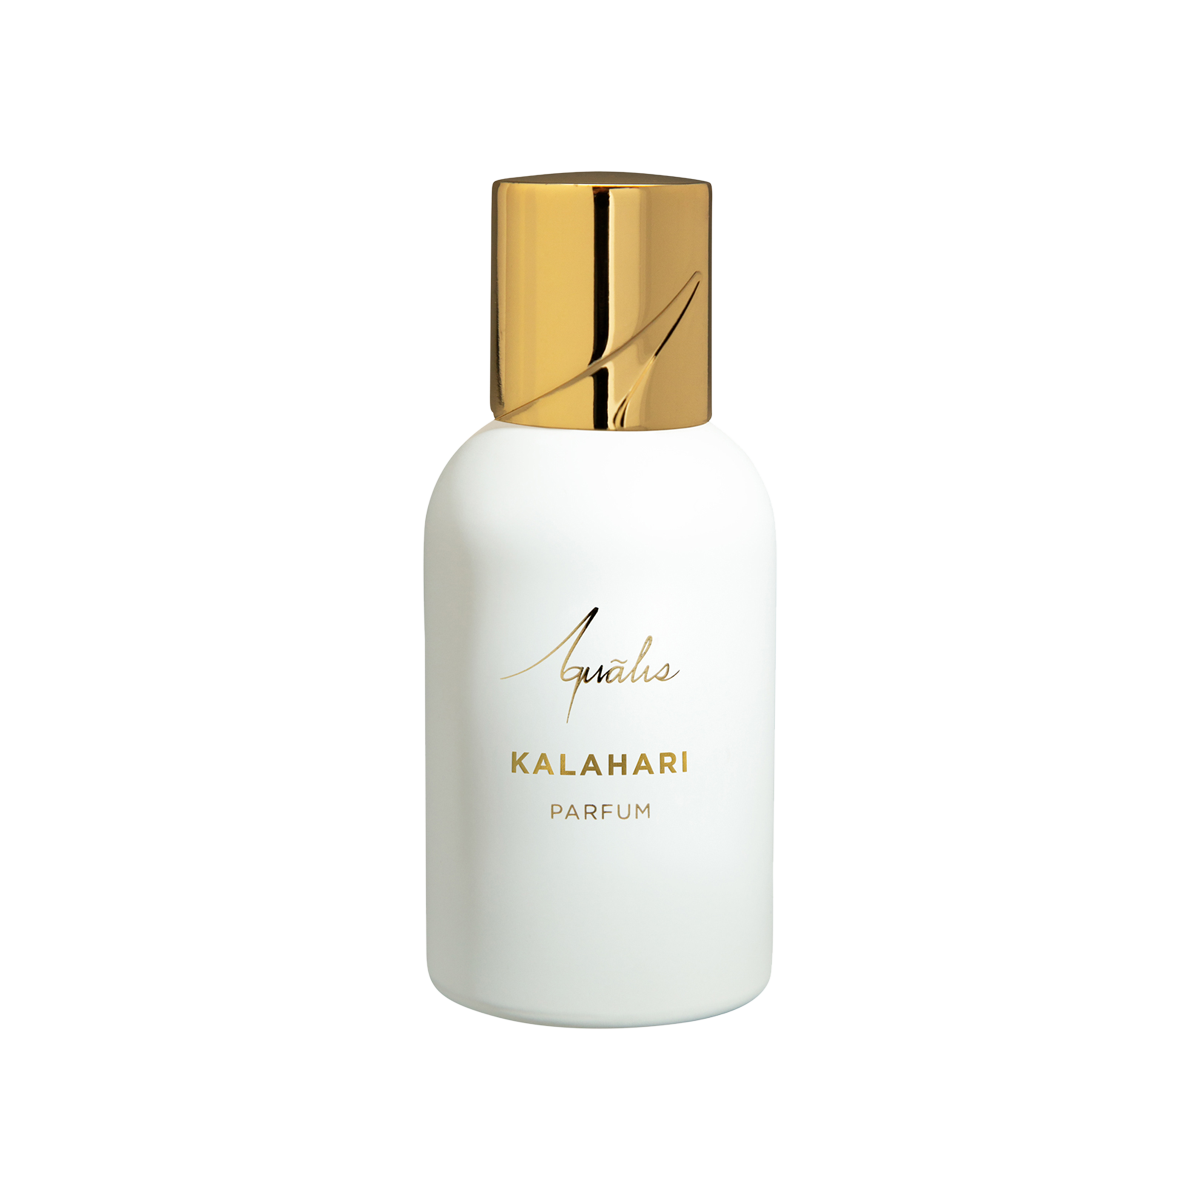 Aqualis - Kalahari Extrait de Parfum